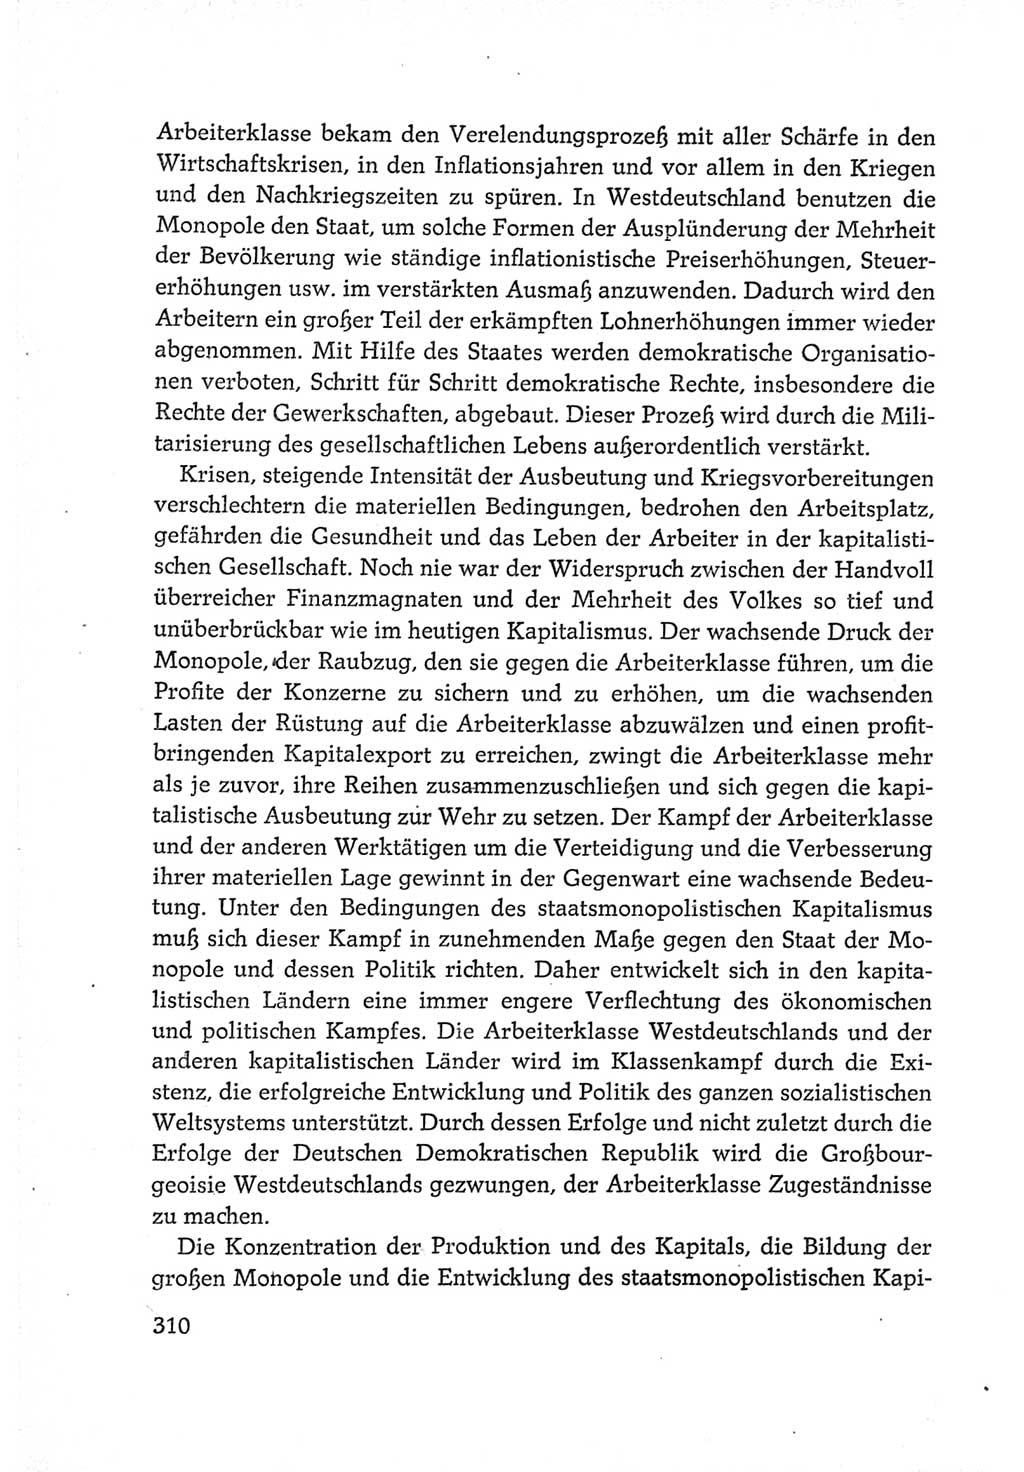 Protokoll der Verhandlungen des Ⅵ. Parteitages der Sozialistischen Einheitspartei Deutschlands (SED) [Deutsche Demokratische Republik (DDR)] 1963, Band Ⅳ, Seite 310 (Prot. Verh. Ⅵ. PT SED DDR 1963, Bd. Ⅳ, S. 310)